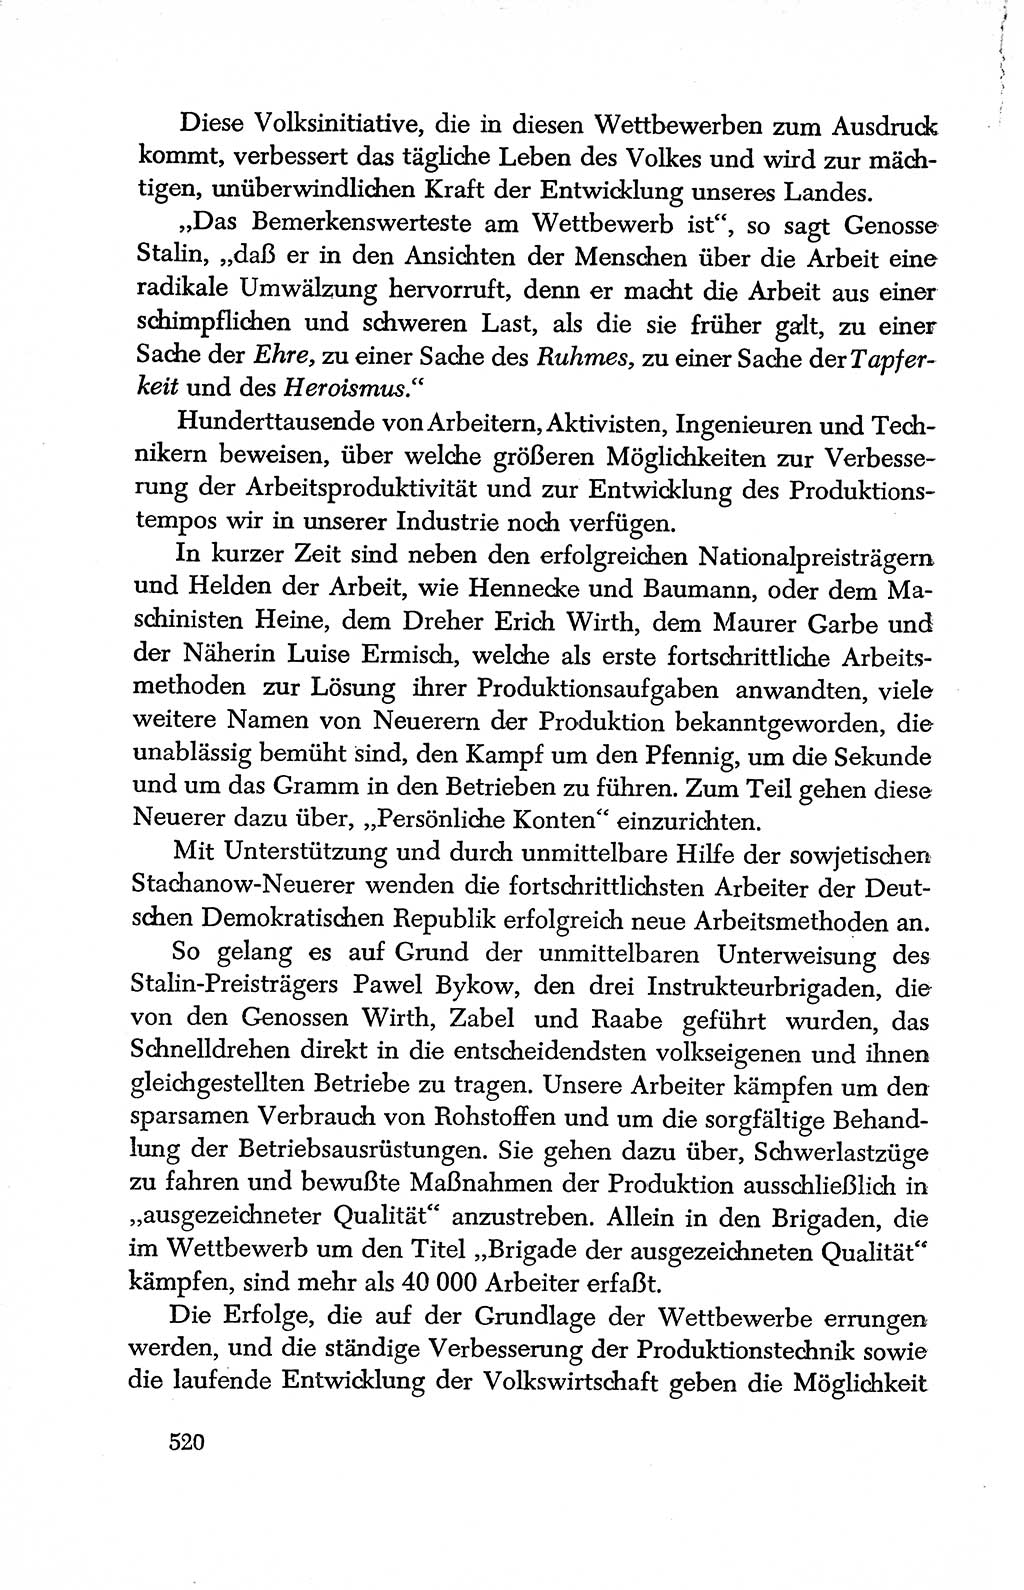 Dokumente der Sozialistischen Einheitspartei Deutschlands (SED) [Deutsche Demokratische Republik (DDR)] 1950-1952, Seite 520 (Dok. SED DDR 1950-1952, S. 520)